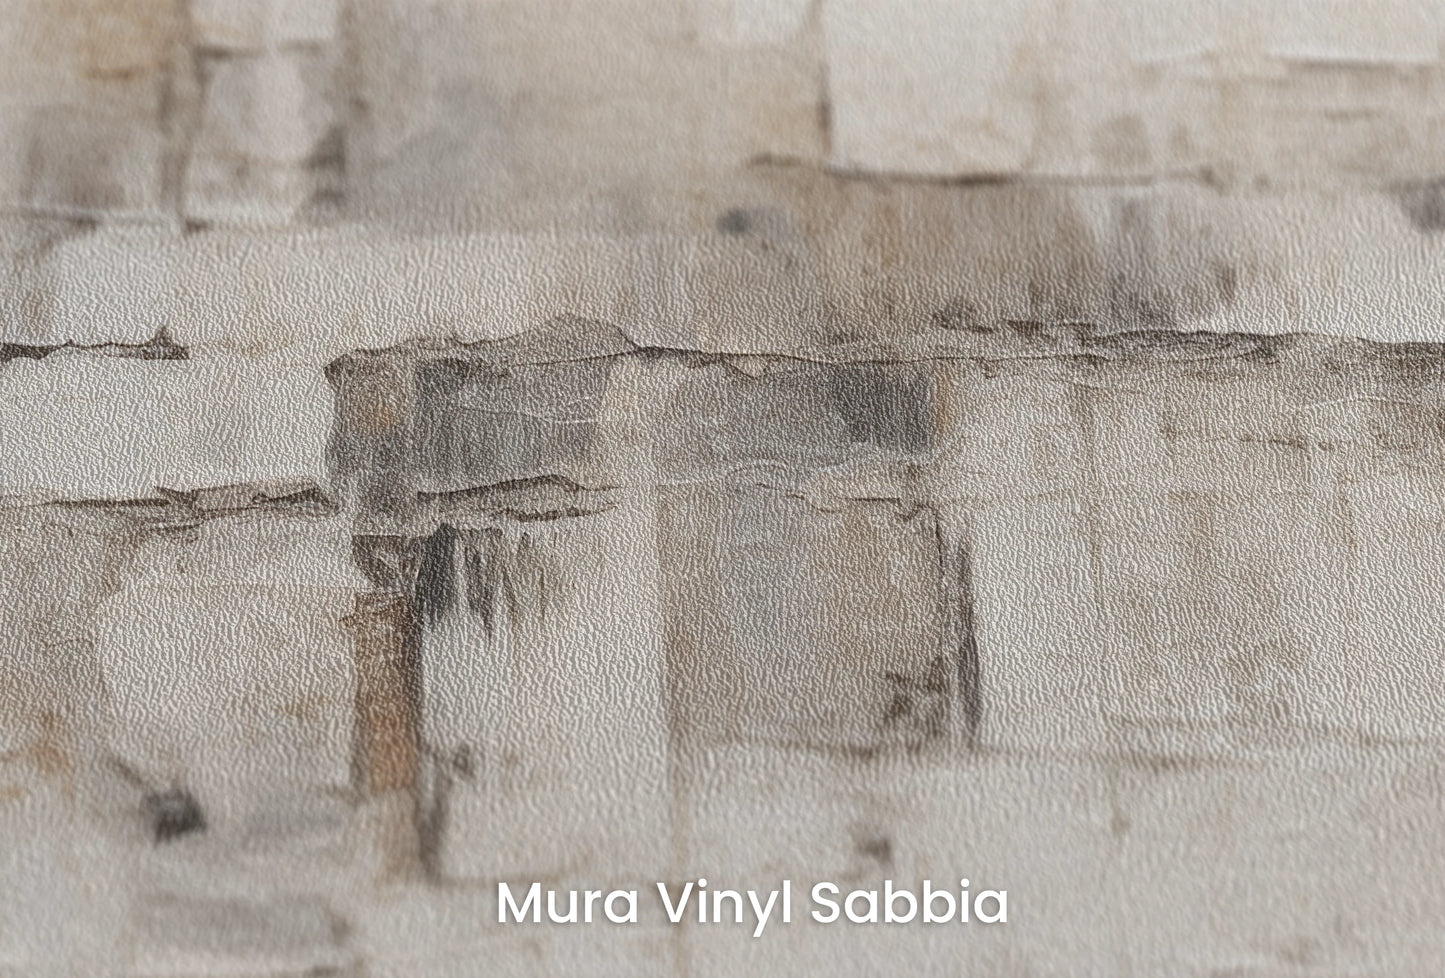 Zbliżenie na artystyczną fototapetę o nazwie Parchment Tactile na podłożu Mura Vinyl Sabbia struktura grubego ziarna piasku.